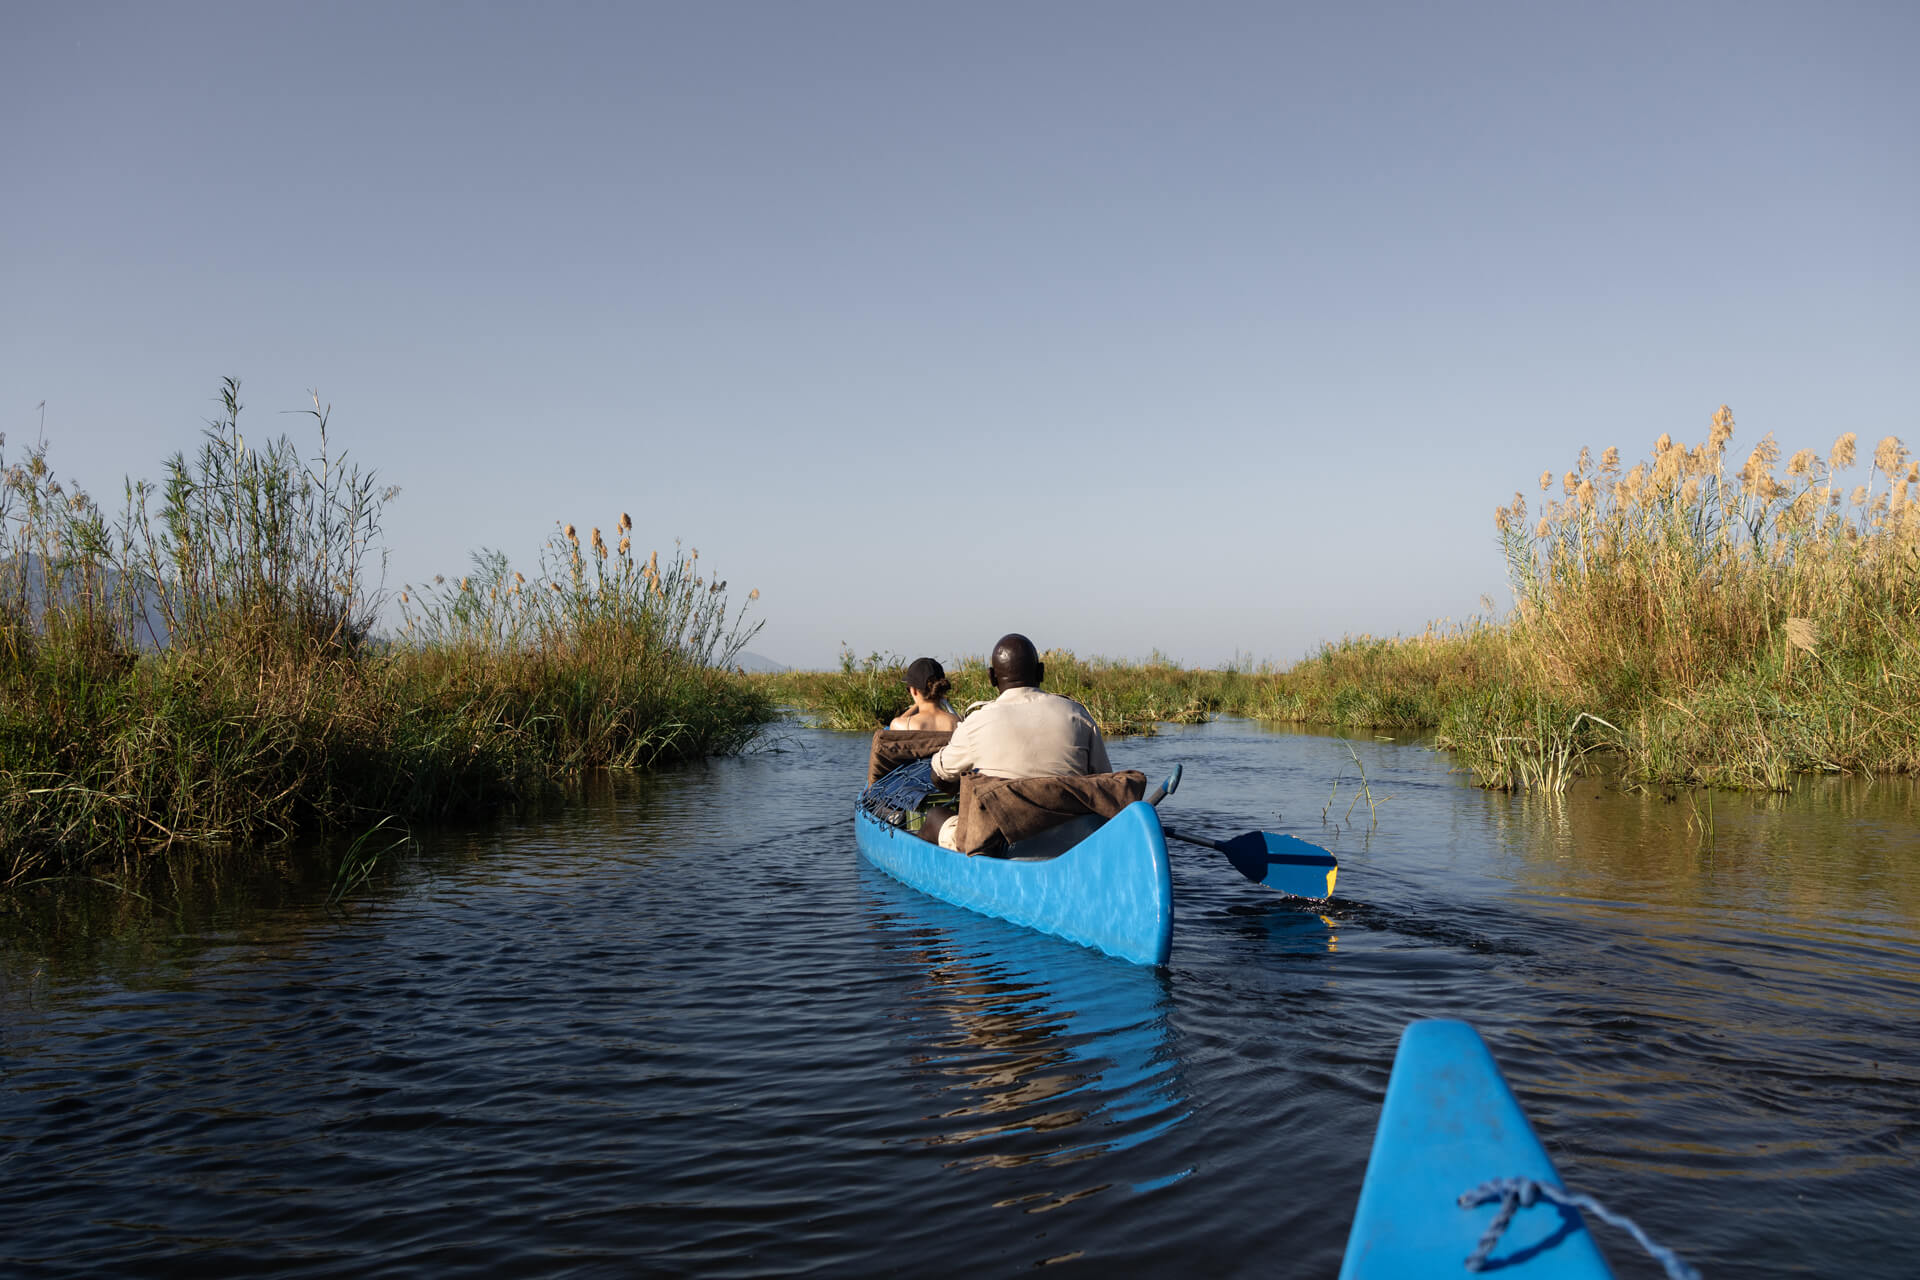 Canoeing on the Zambezi